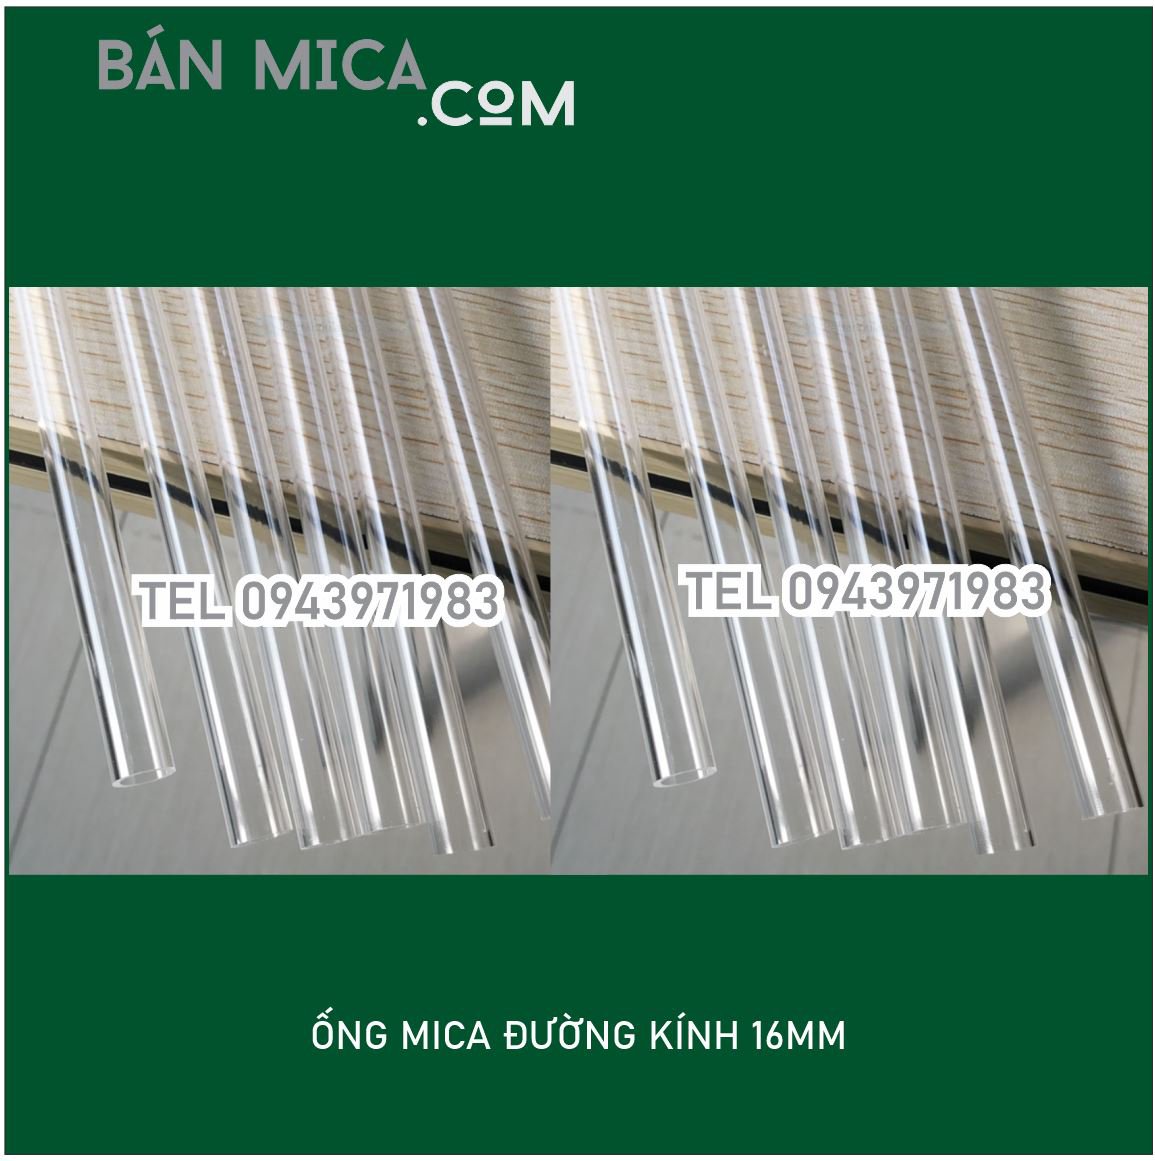 Mica ống D16 (MM) - BÁN MICA.COM , Chuyên các loại ống mica